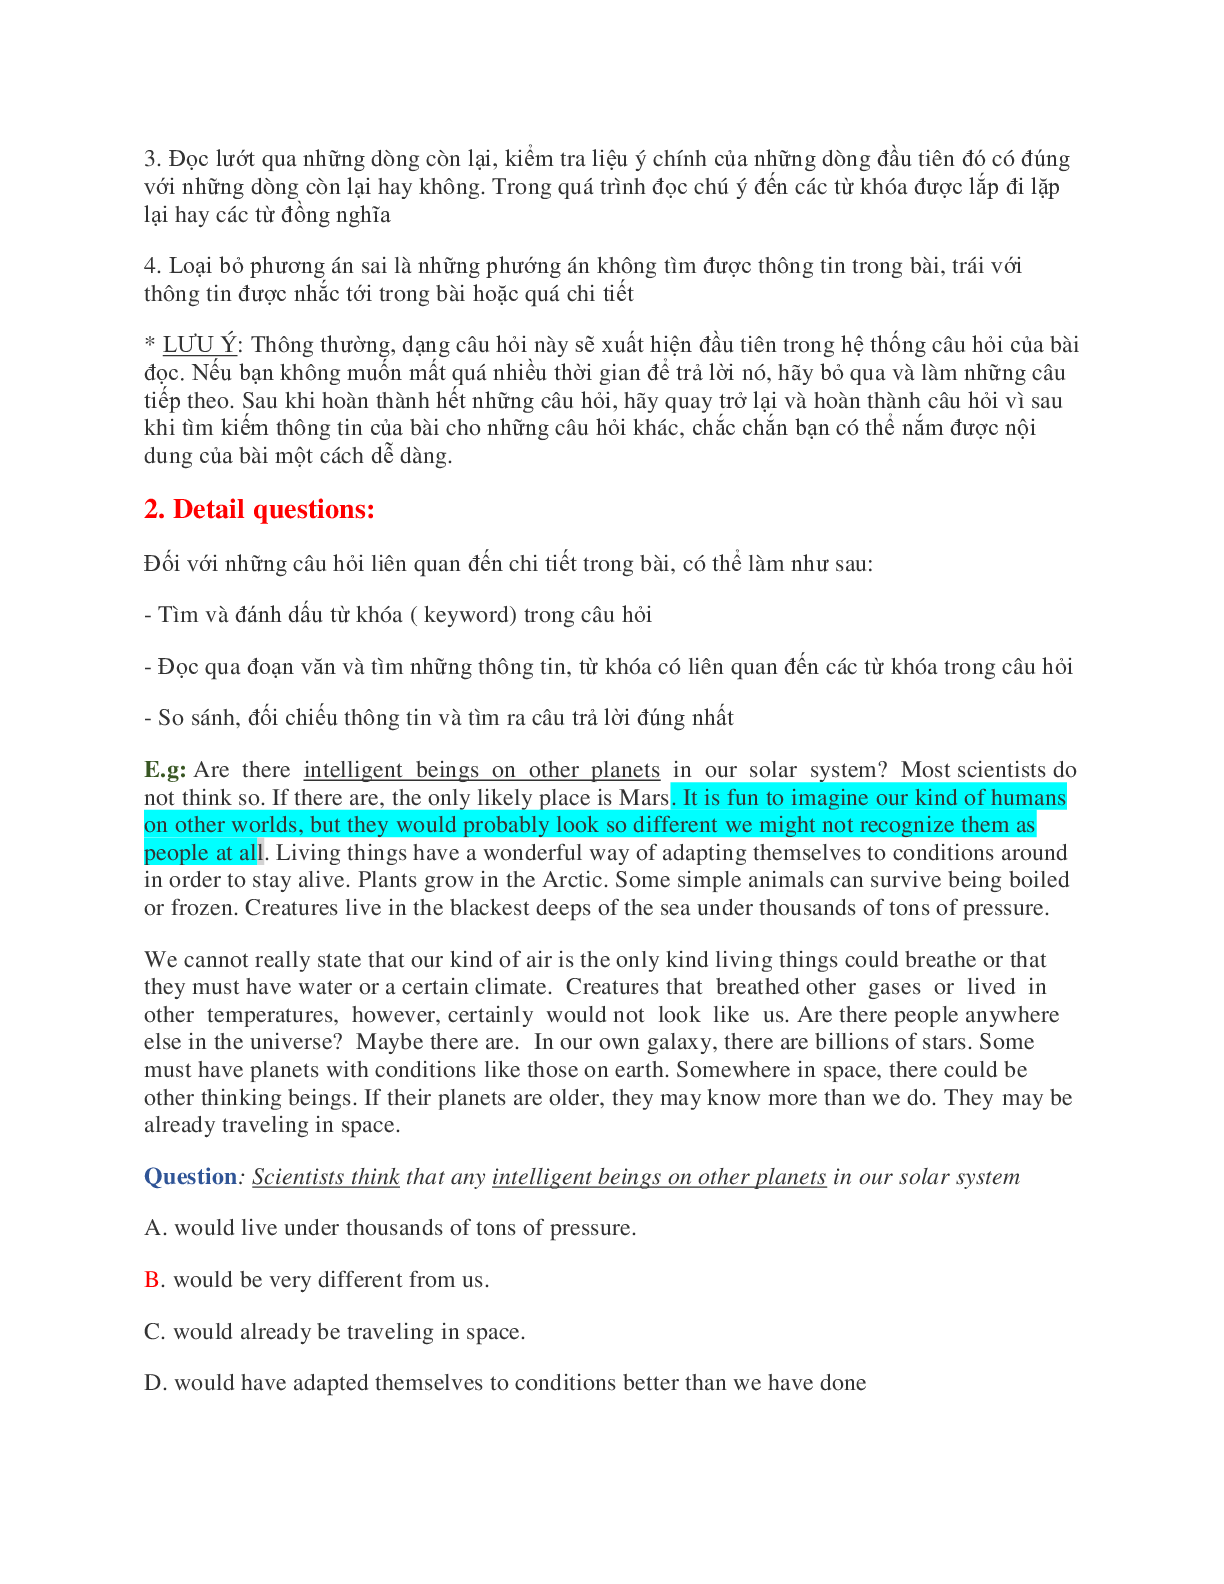 Chiến thuật làm Bài đọc hiểu môn Tiếng anh (trang 2)